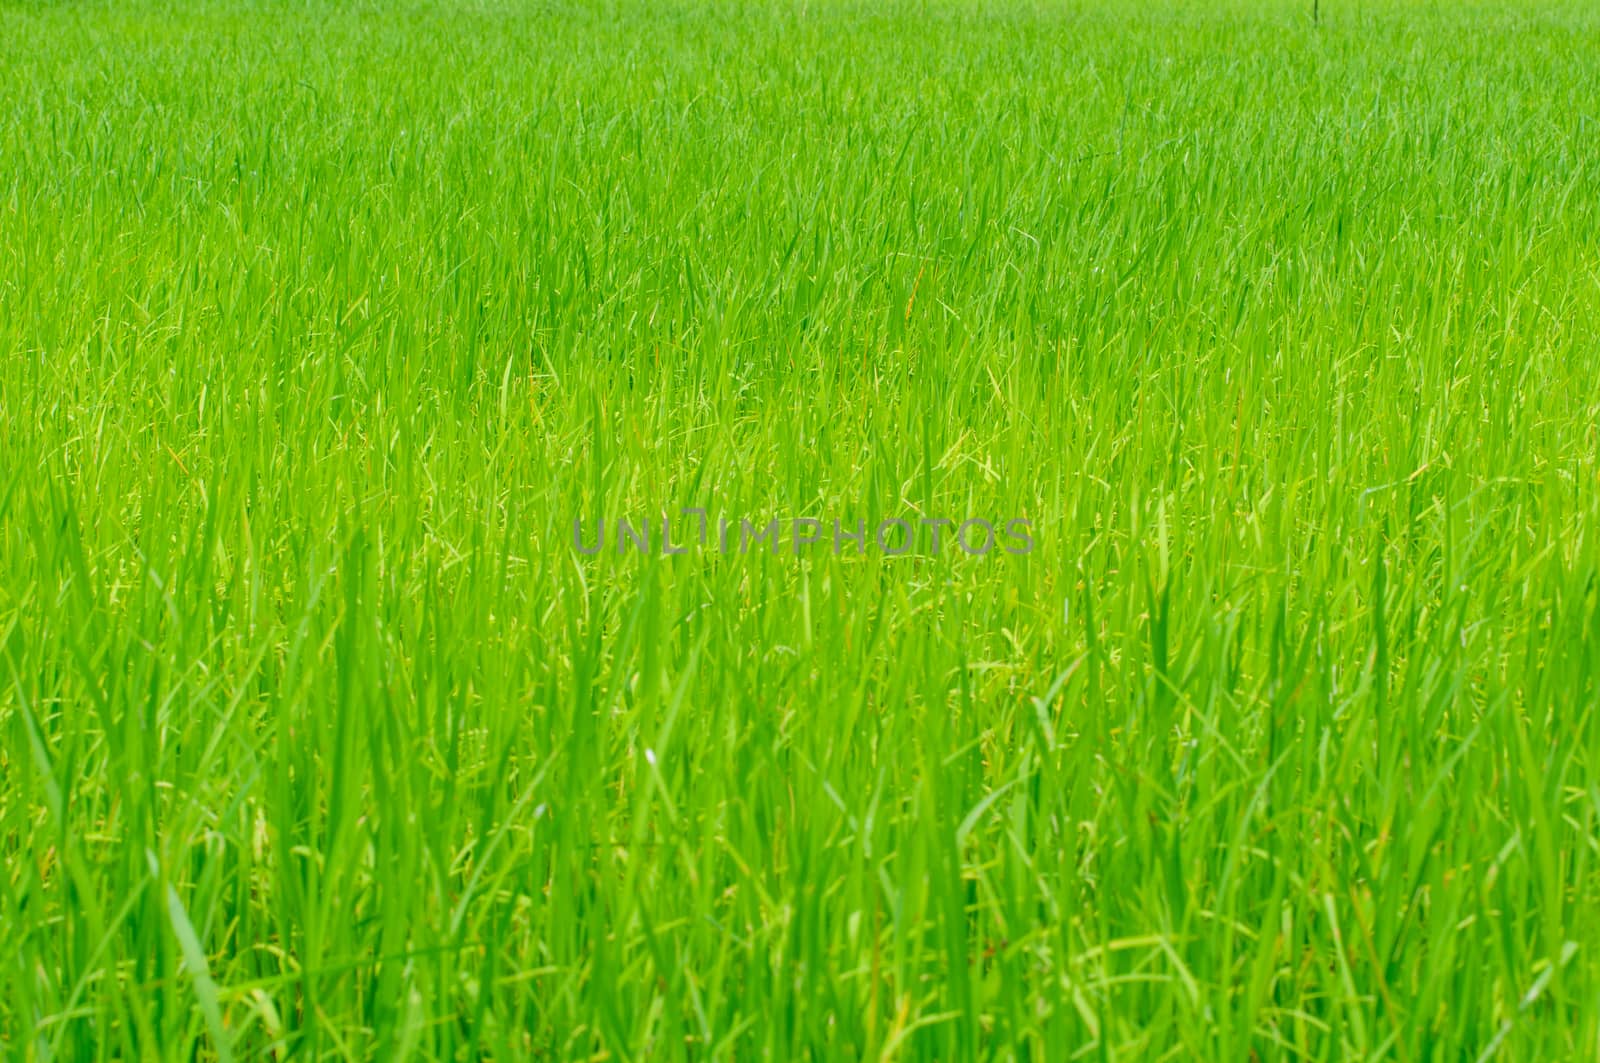 The rice growing in cornfield by Sorapop